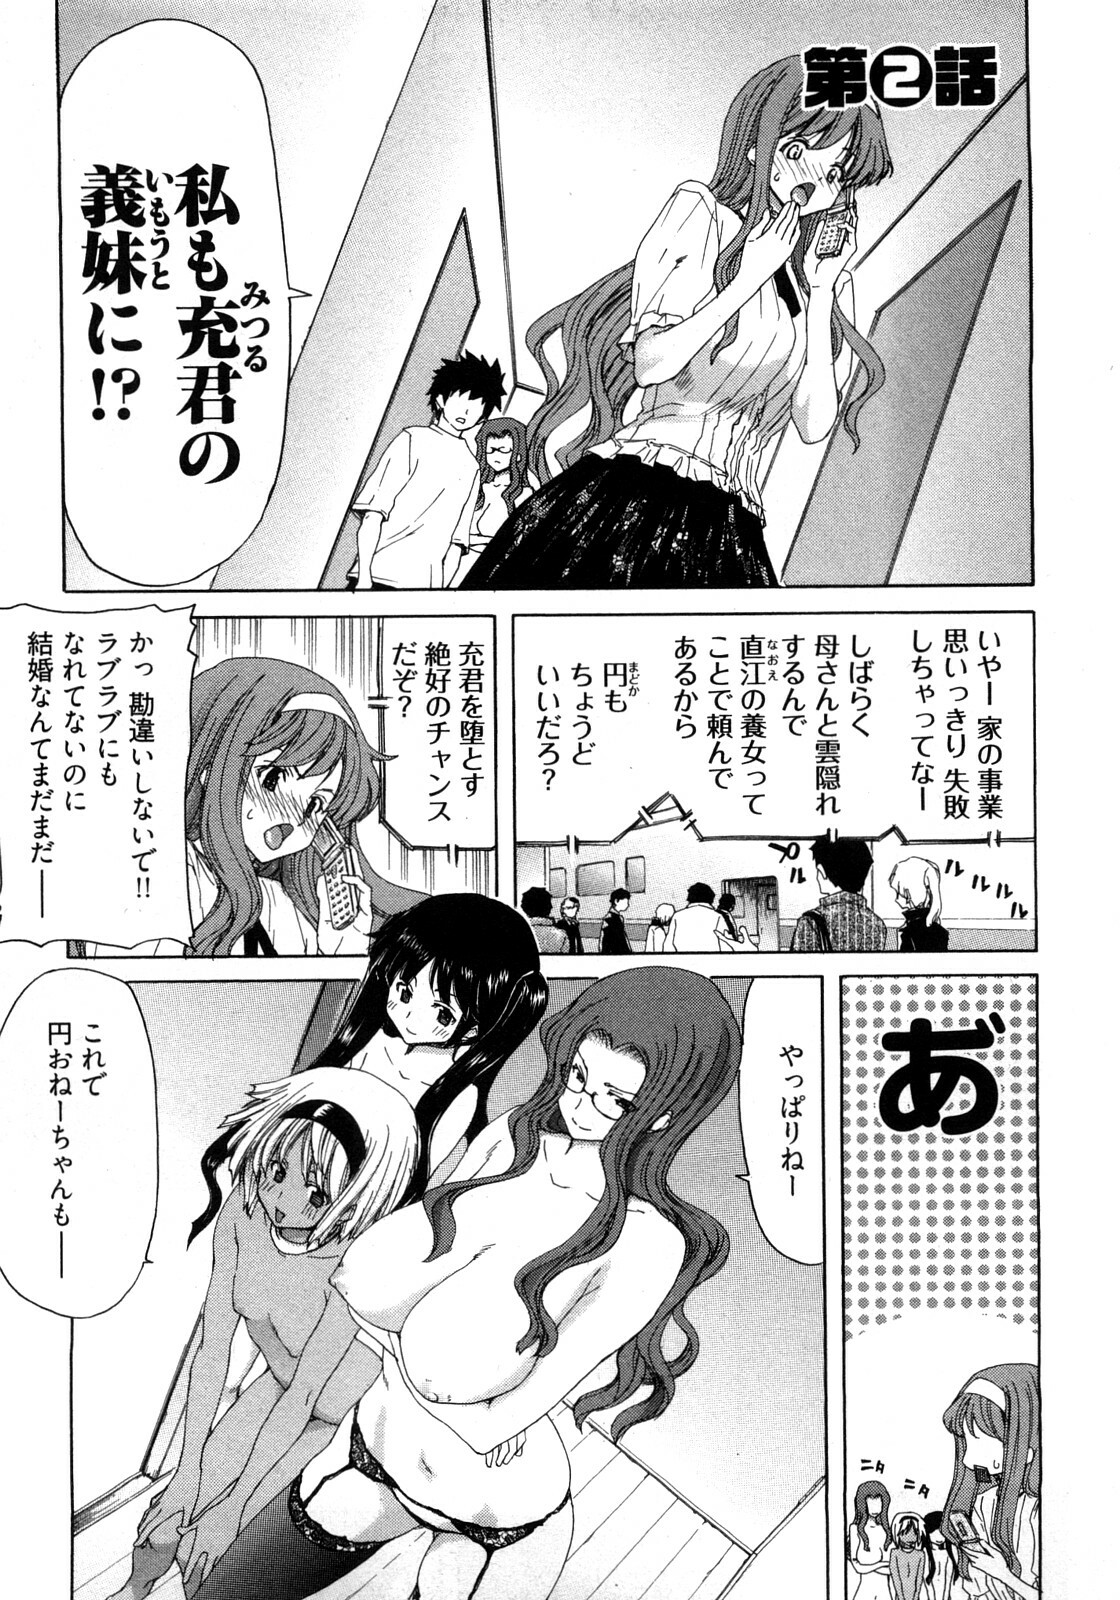 [Hori Hiroaki] My Darling page 28 full